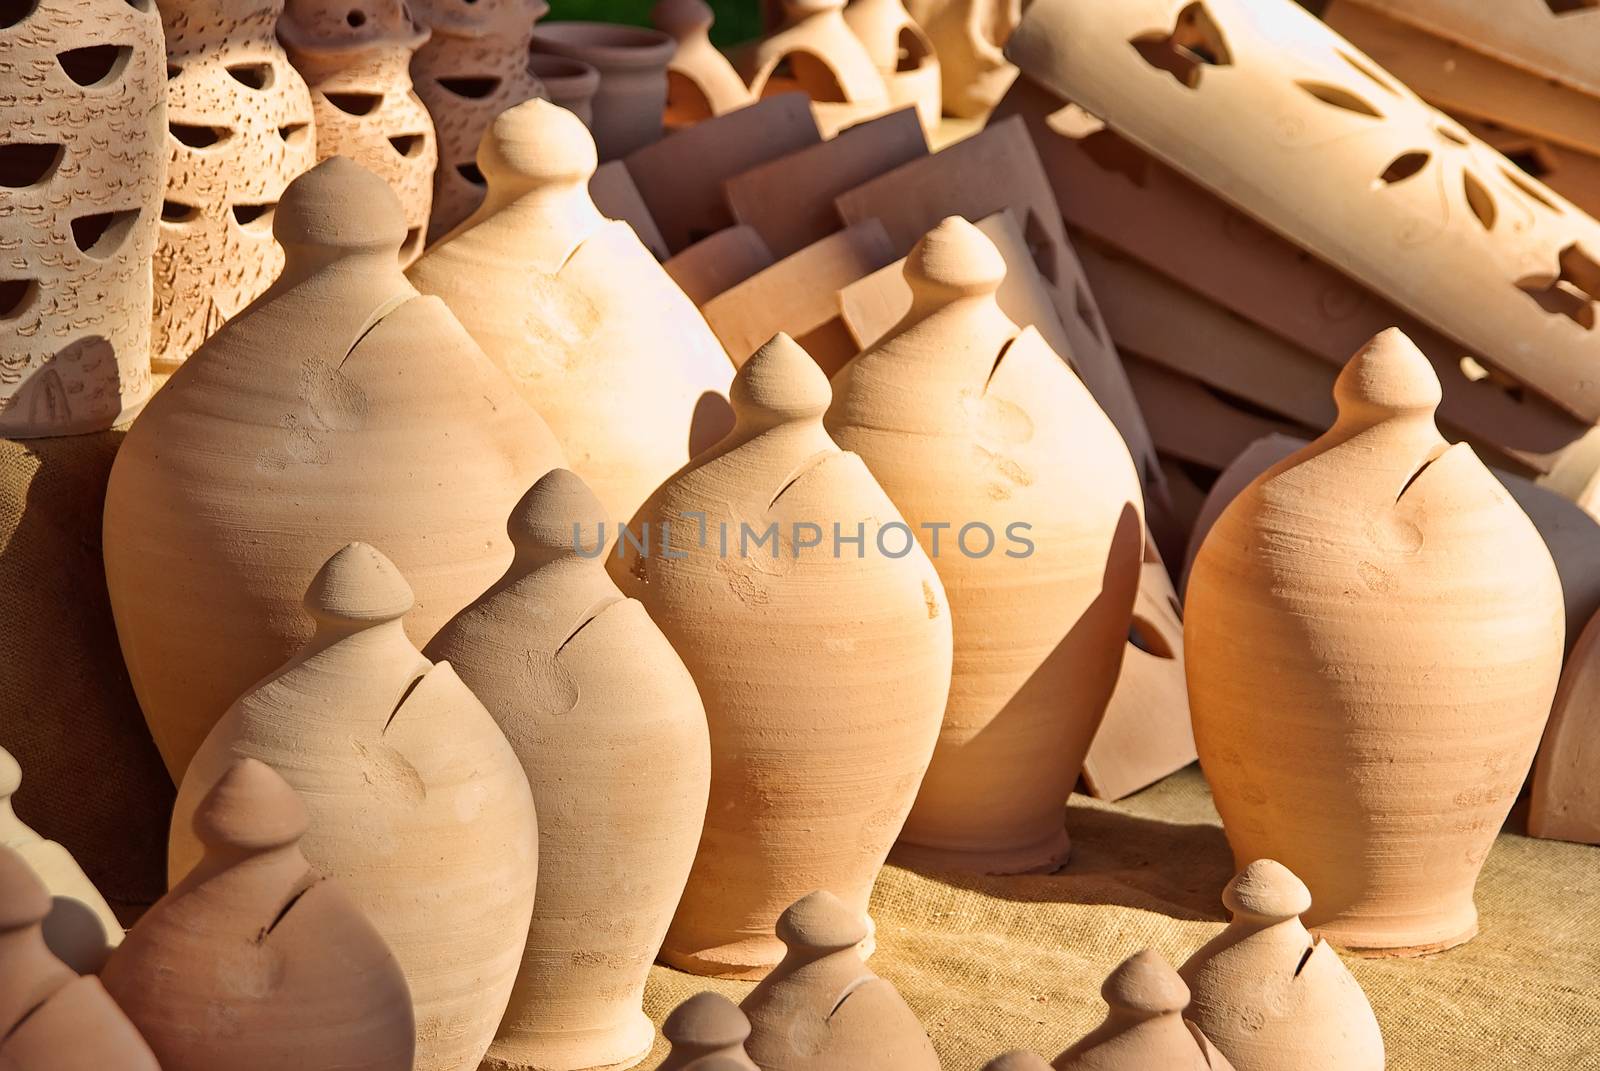 Ceramic pots by JCVSTOCK